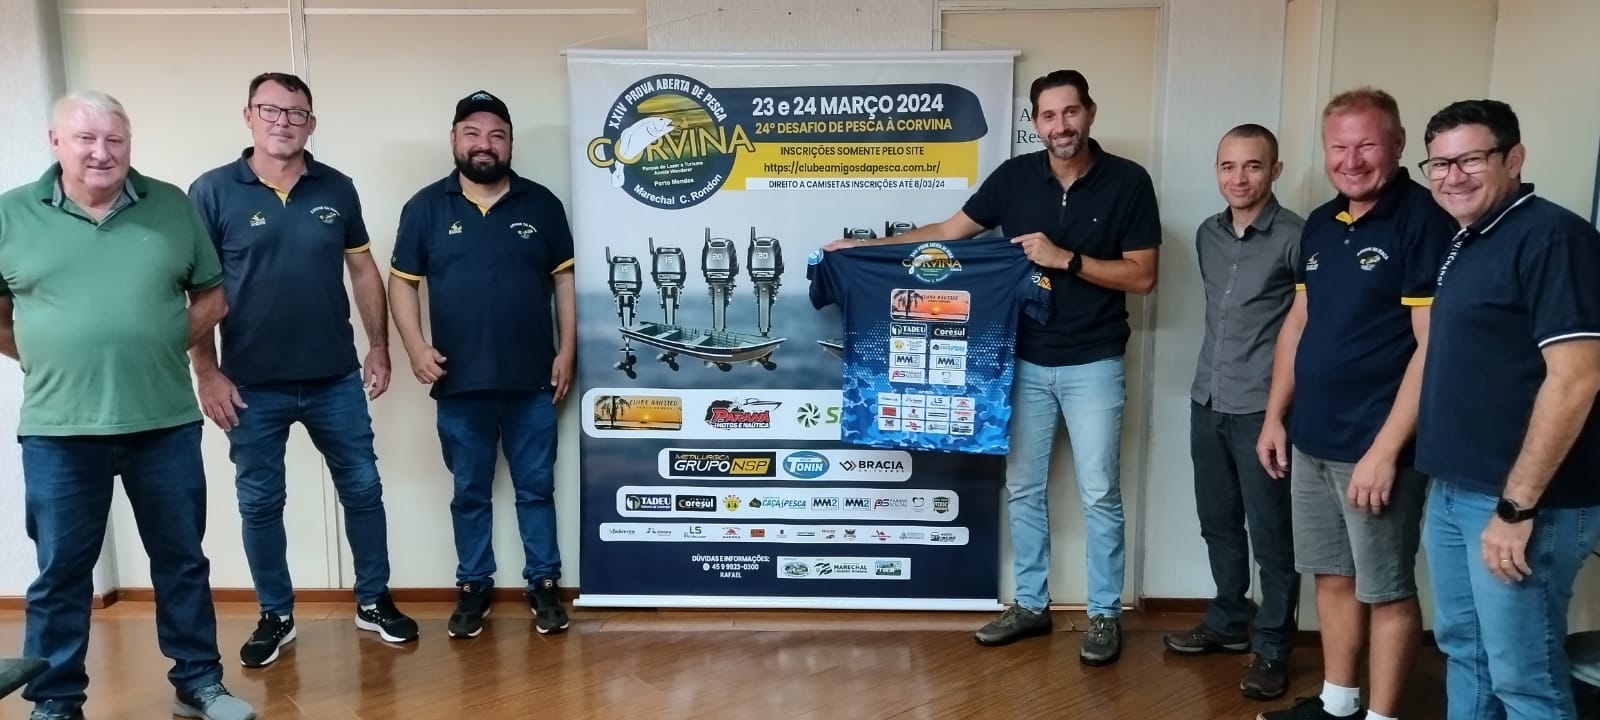 Clube organiza prova aberta de pesca da corvina em Porto Mendes